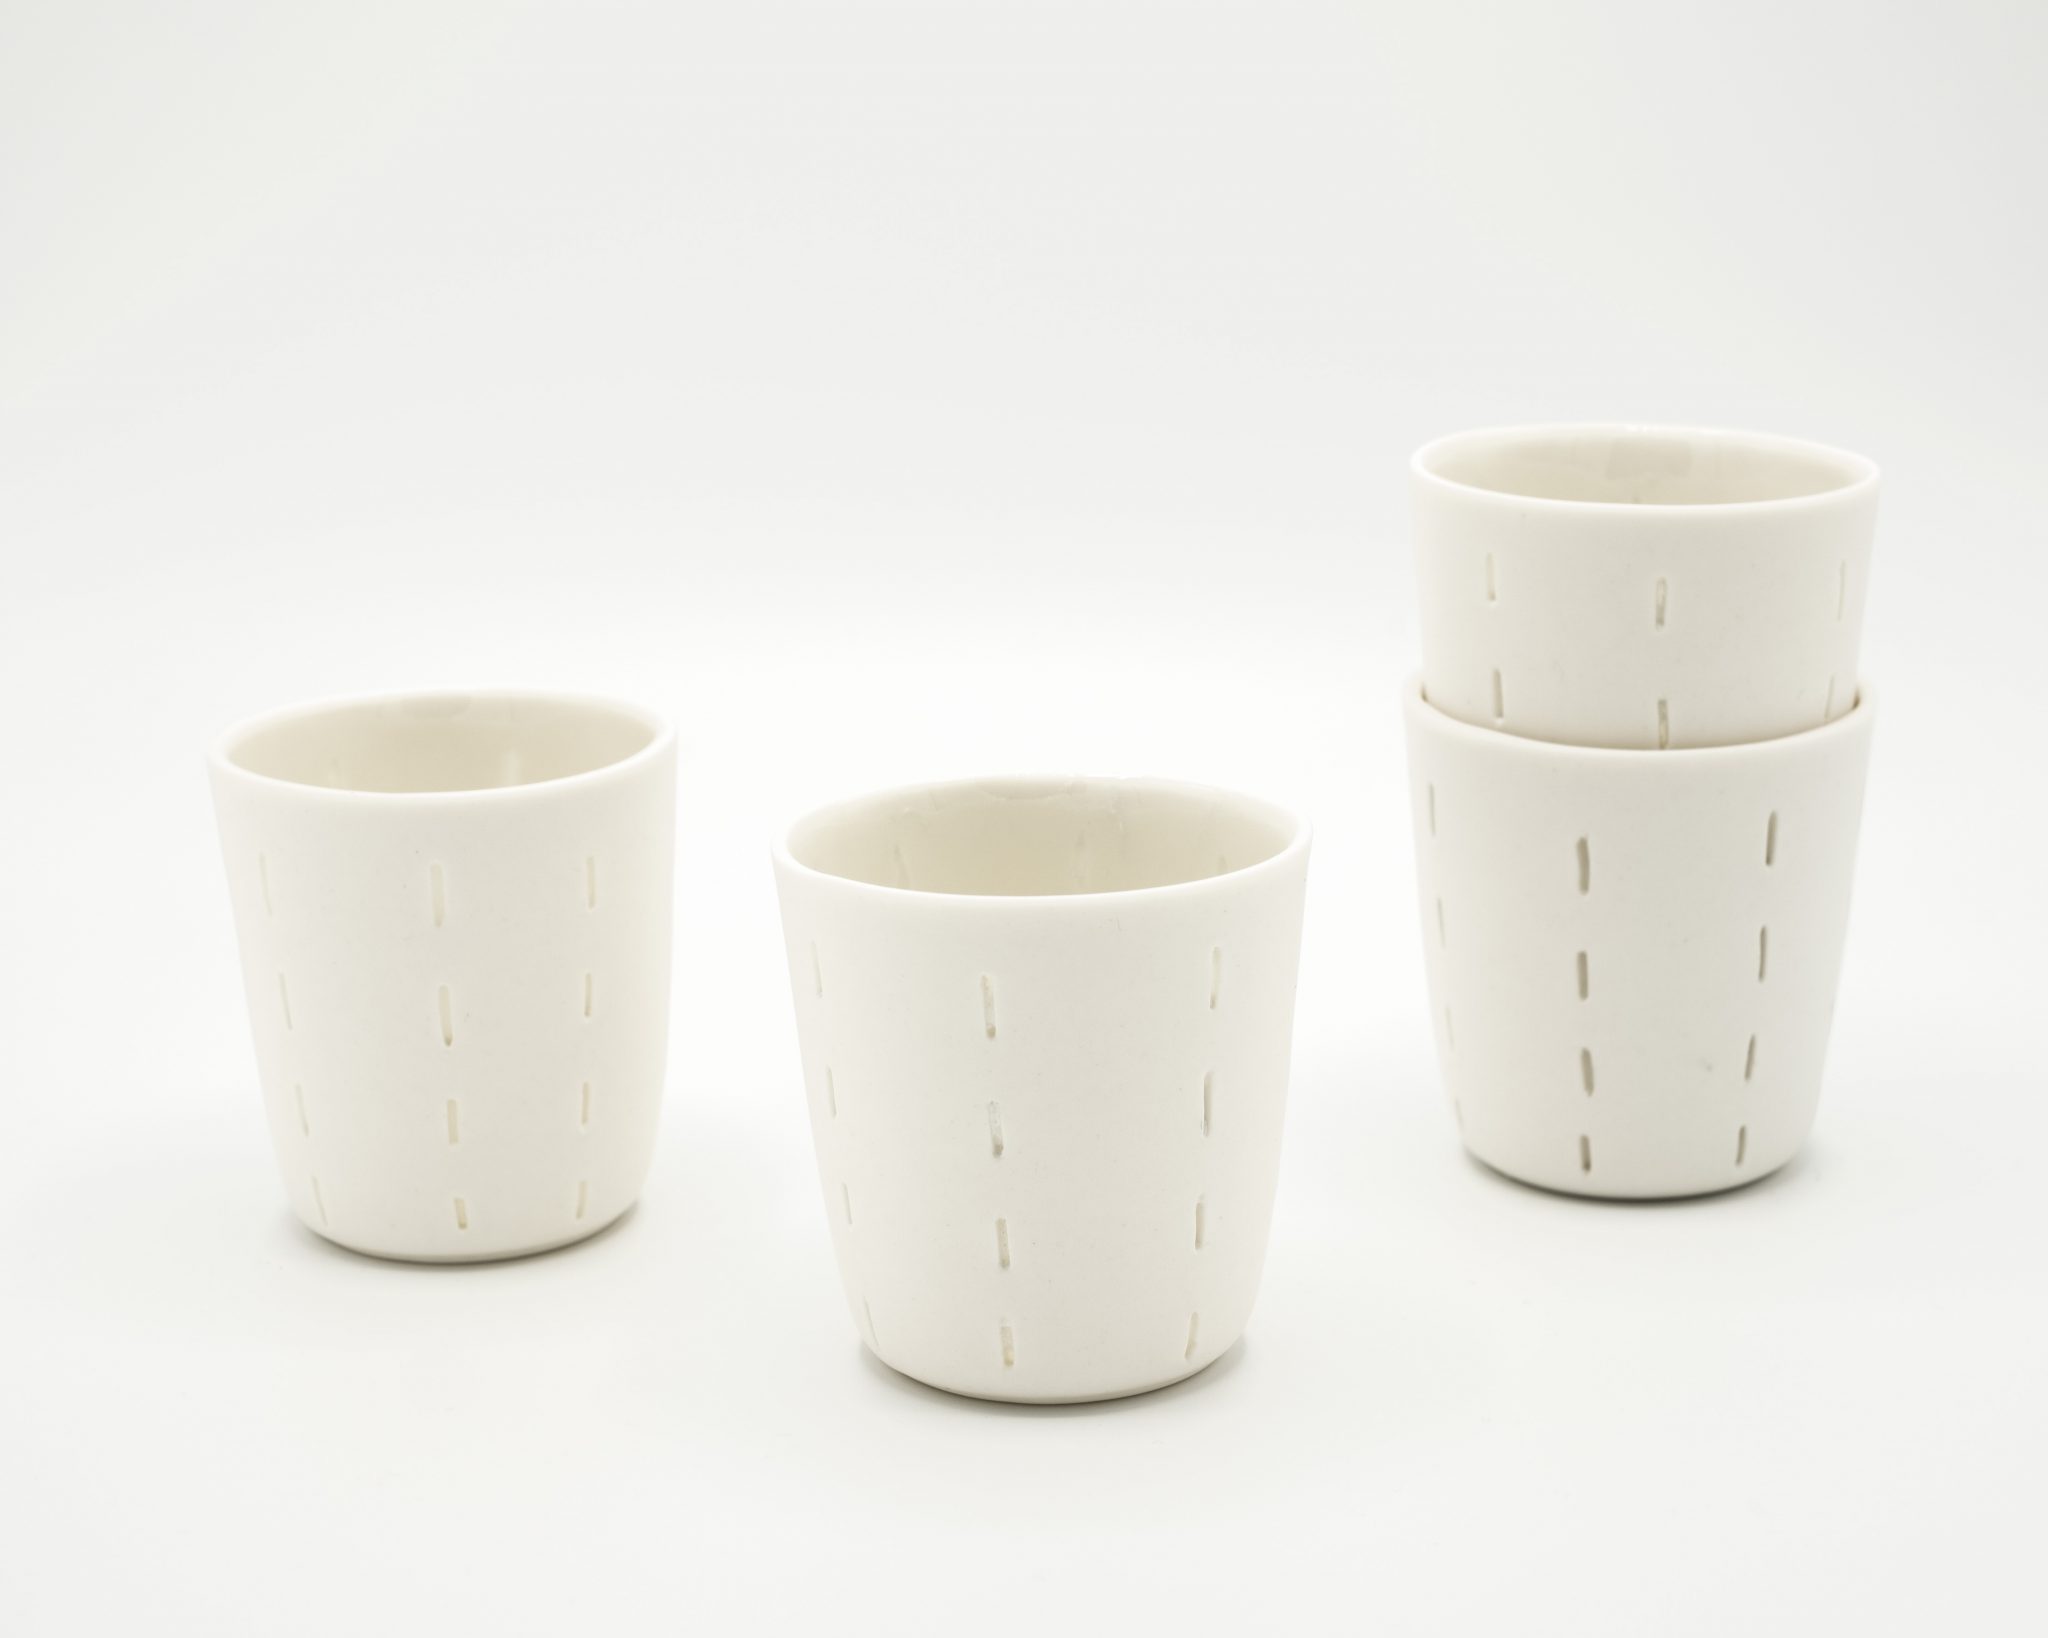 porcelain espresso cups non-transparency